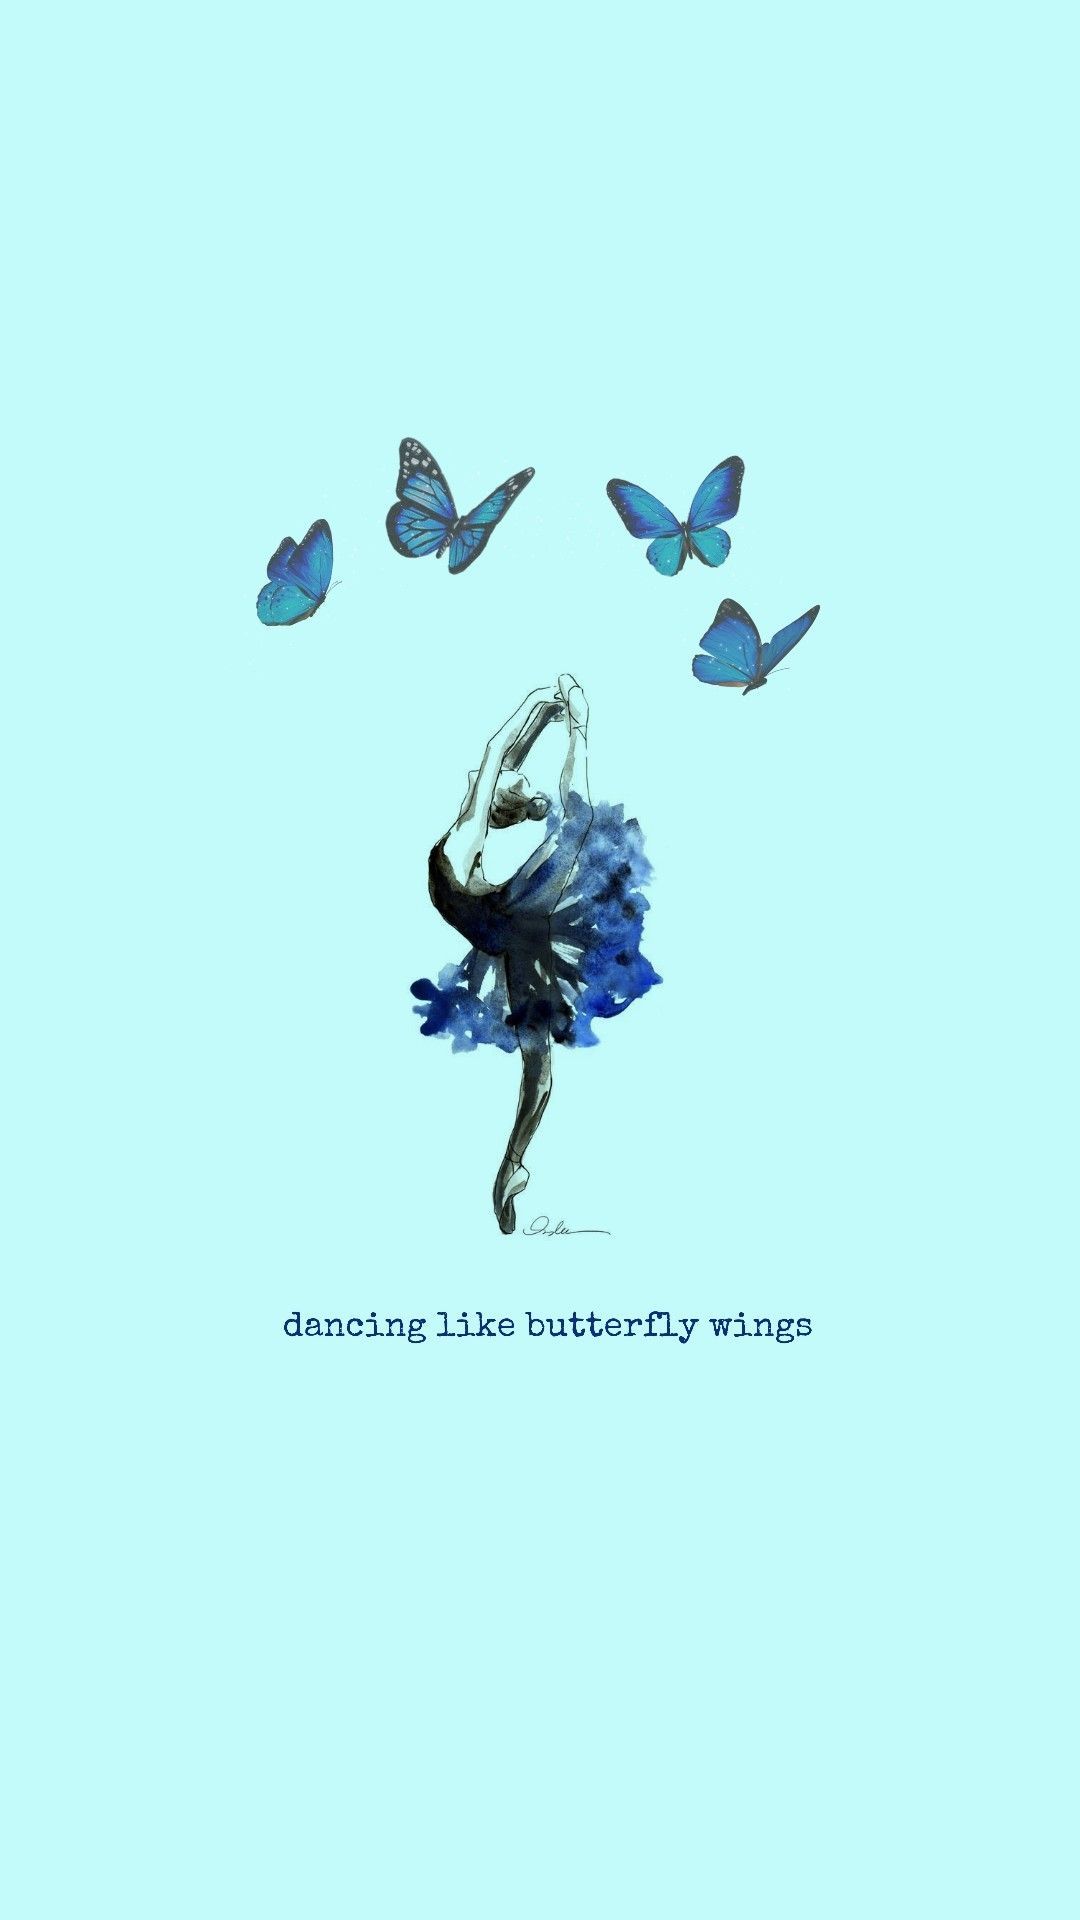 Dancing like butterfly wings - Dance, ballet